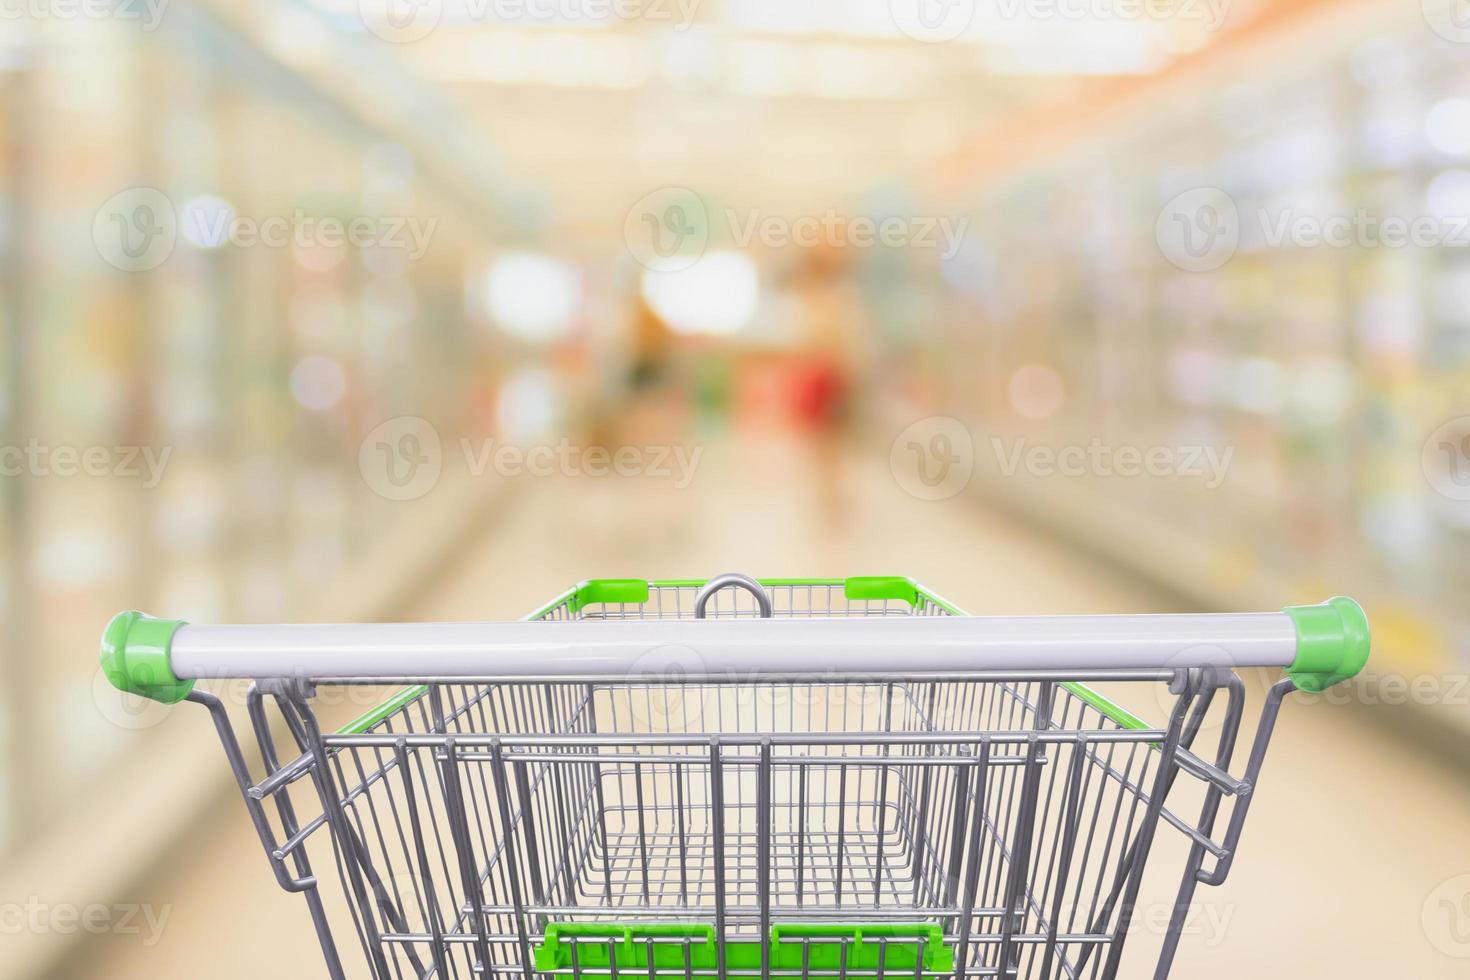 vista do carrinho de compras com borrão abstrato do corredor do supermercado congelados e produtos lácteos no fundo das prateleiras da geladeira foto